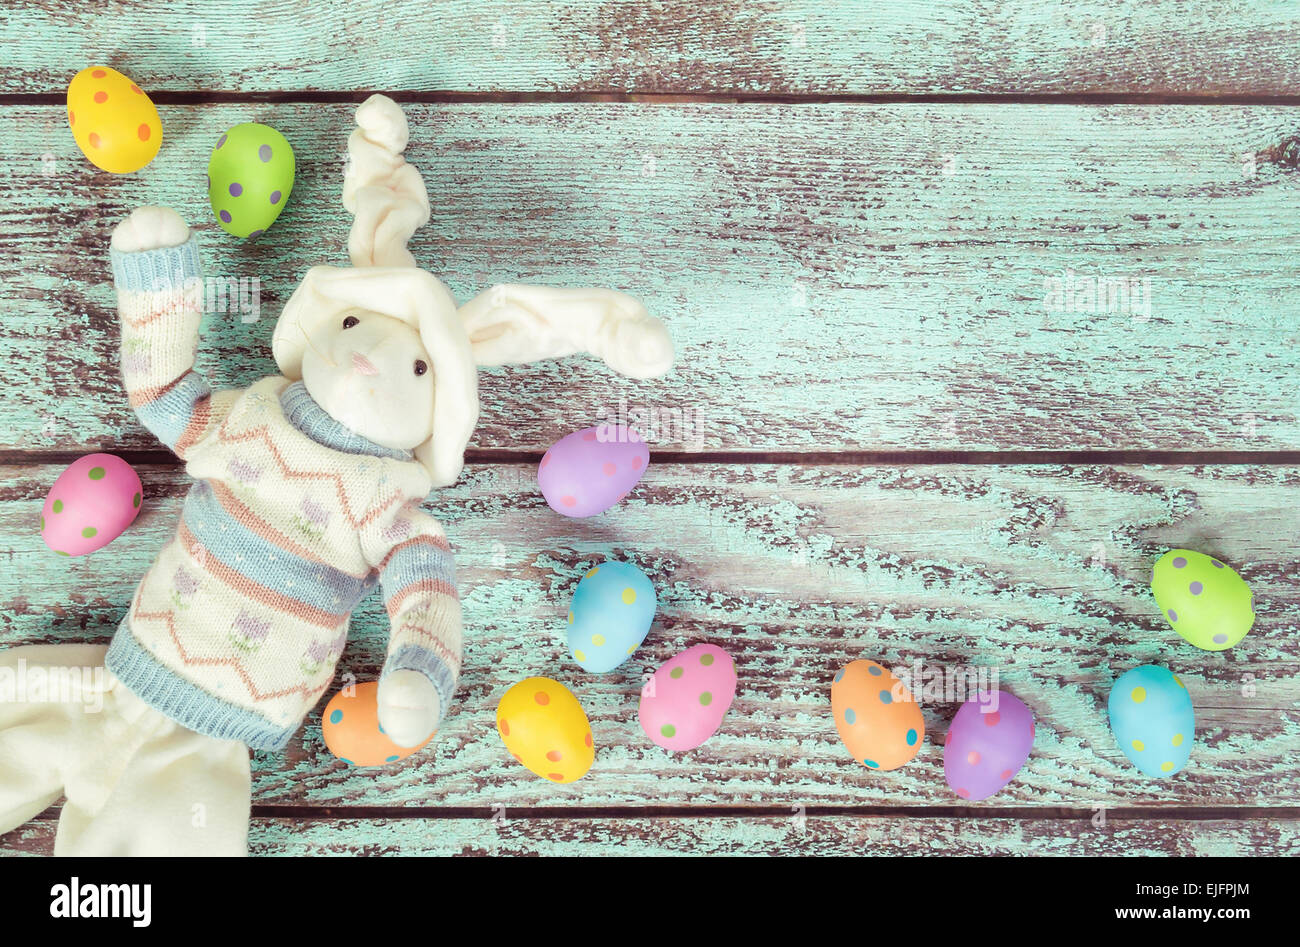 Décorations de Pâques lapin et oeufs pastel contre green vintage background Banque D'Images